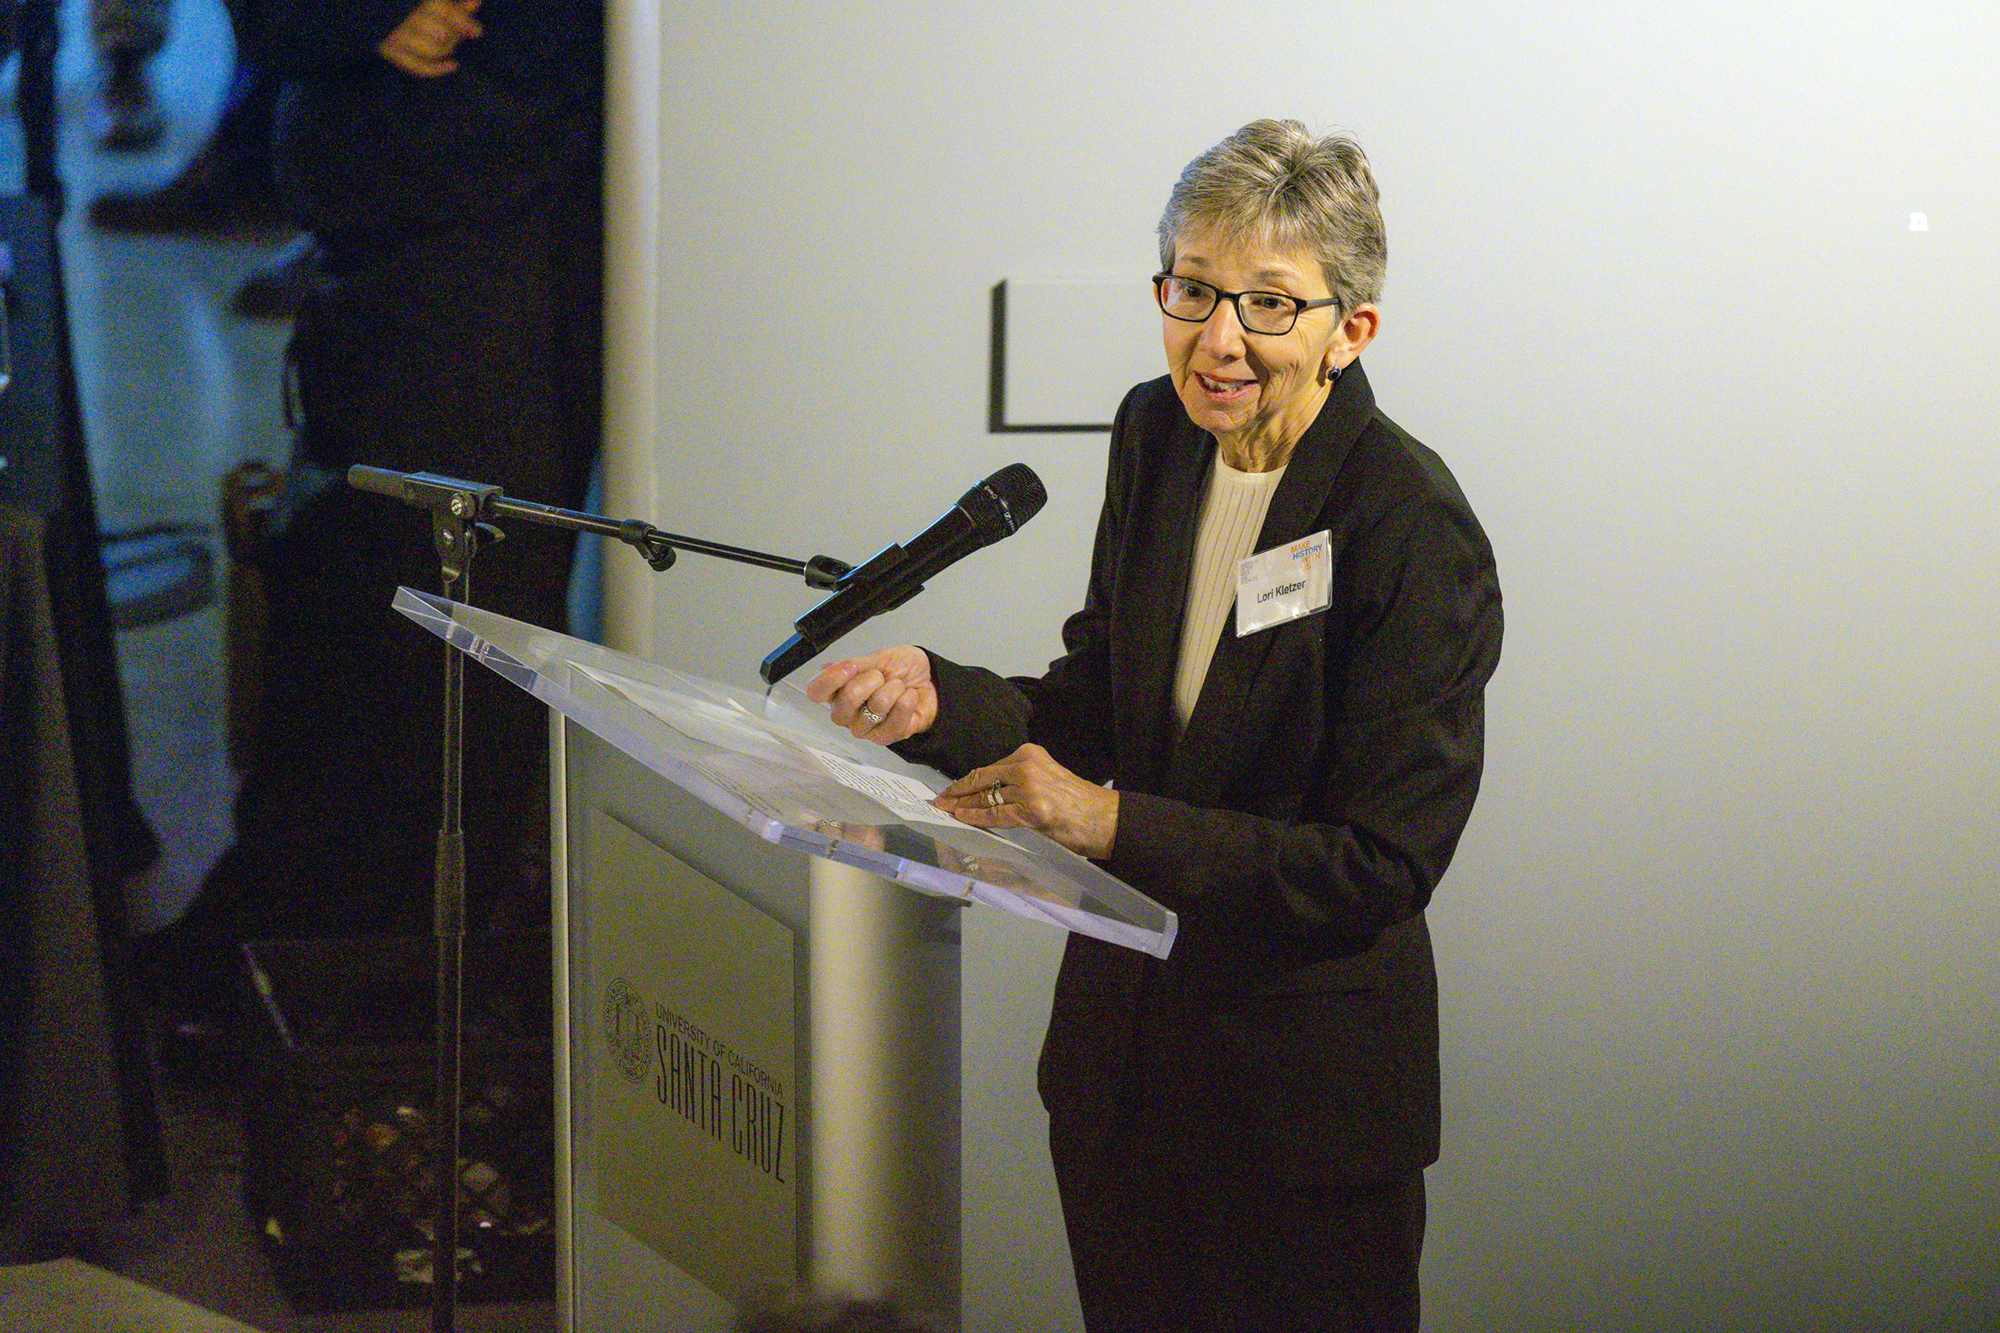 Lori Kletzer speaking at a podium